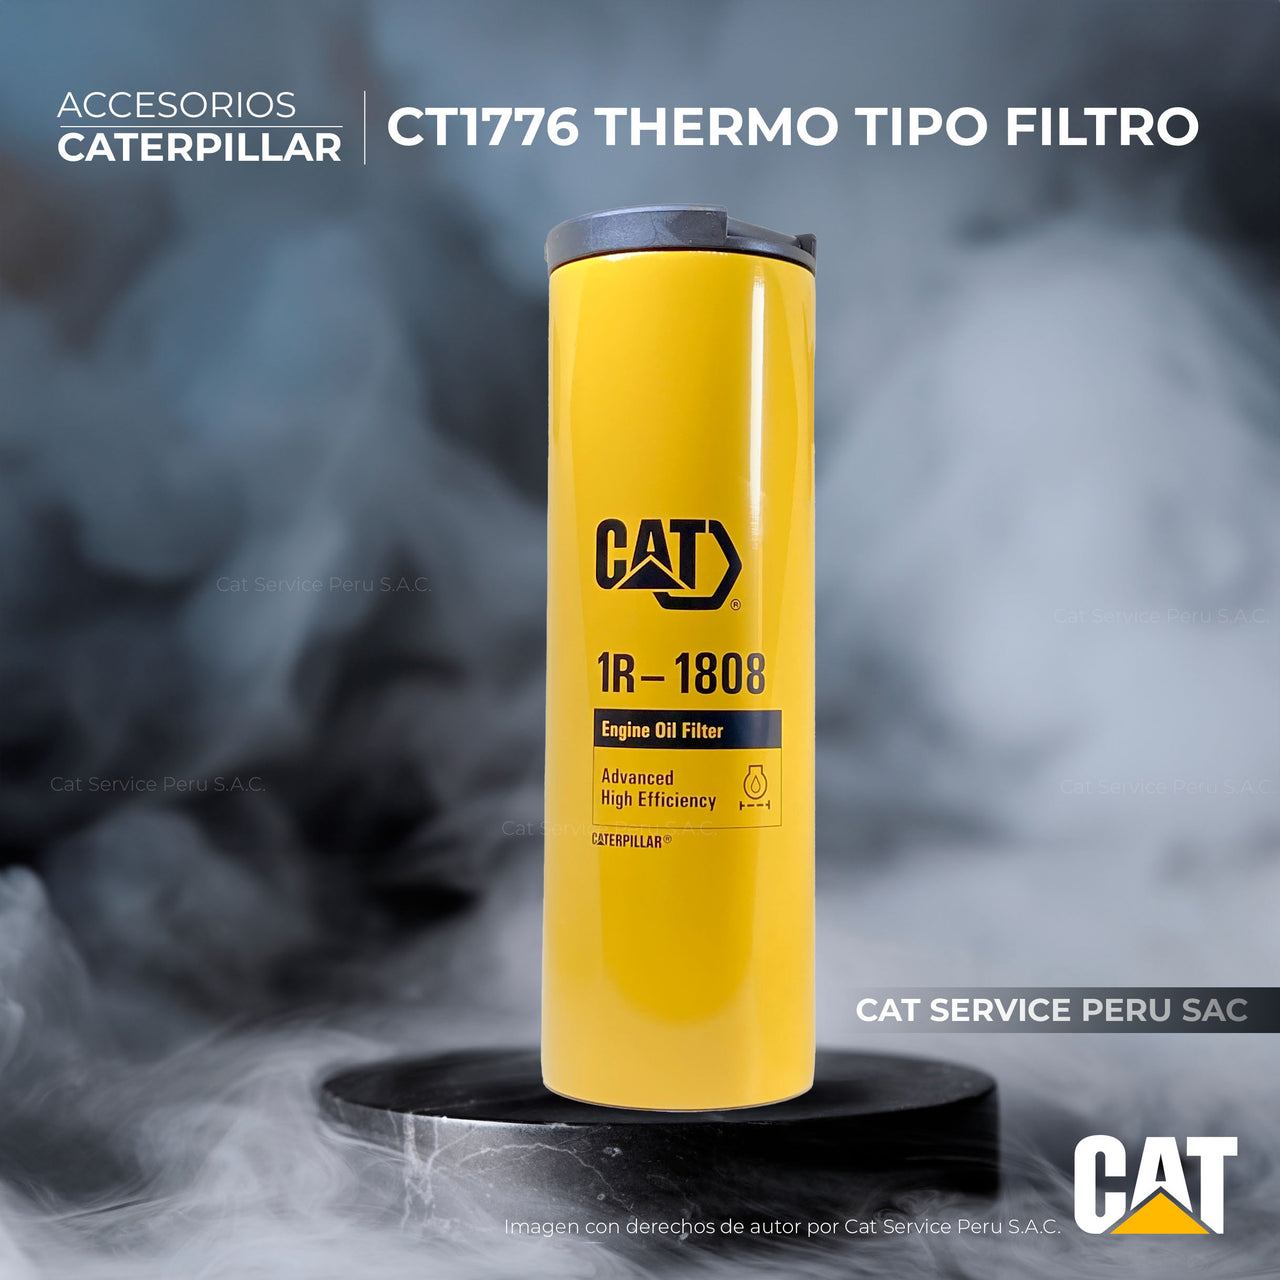 CT1776 Thermo Tipo Filtro De Aceite Cat 1R-1808